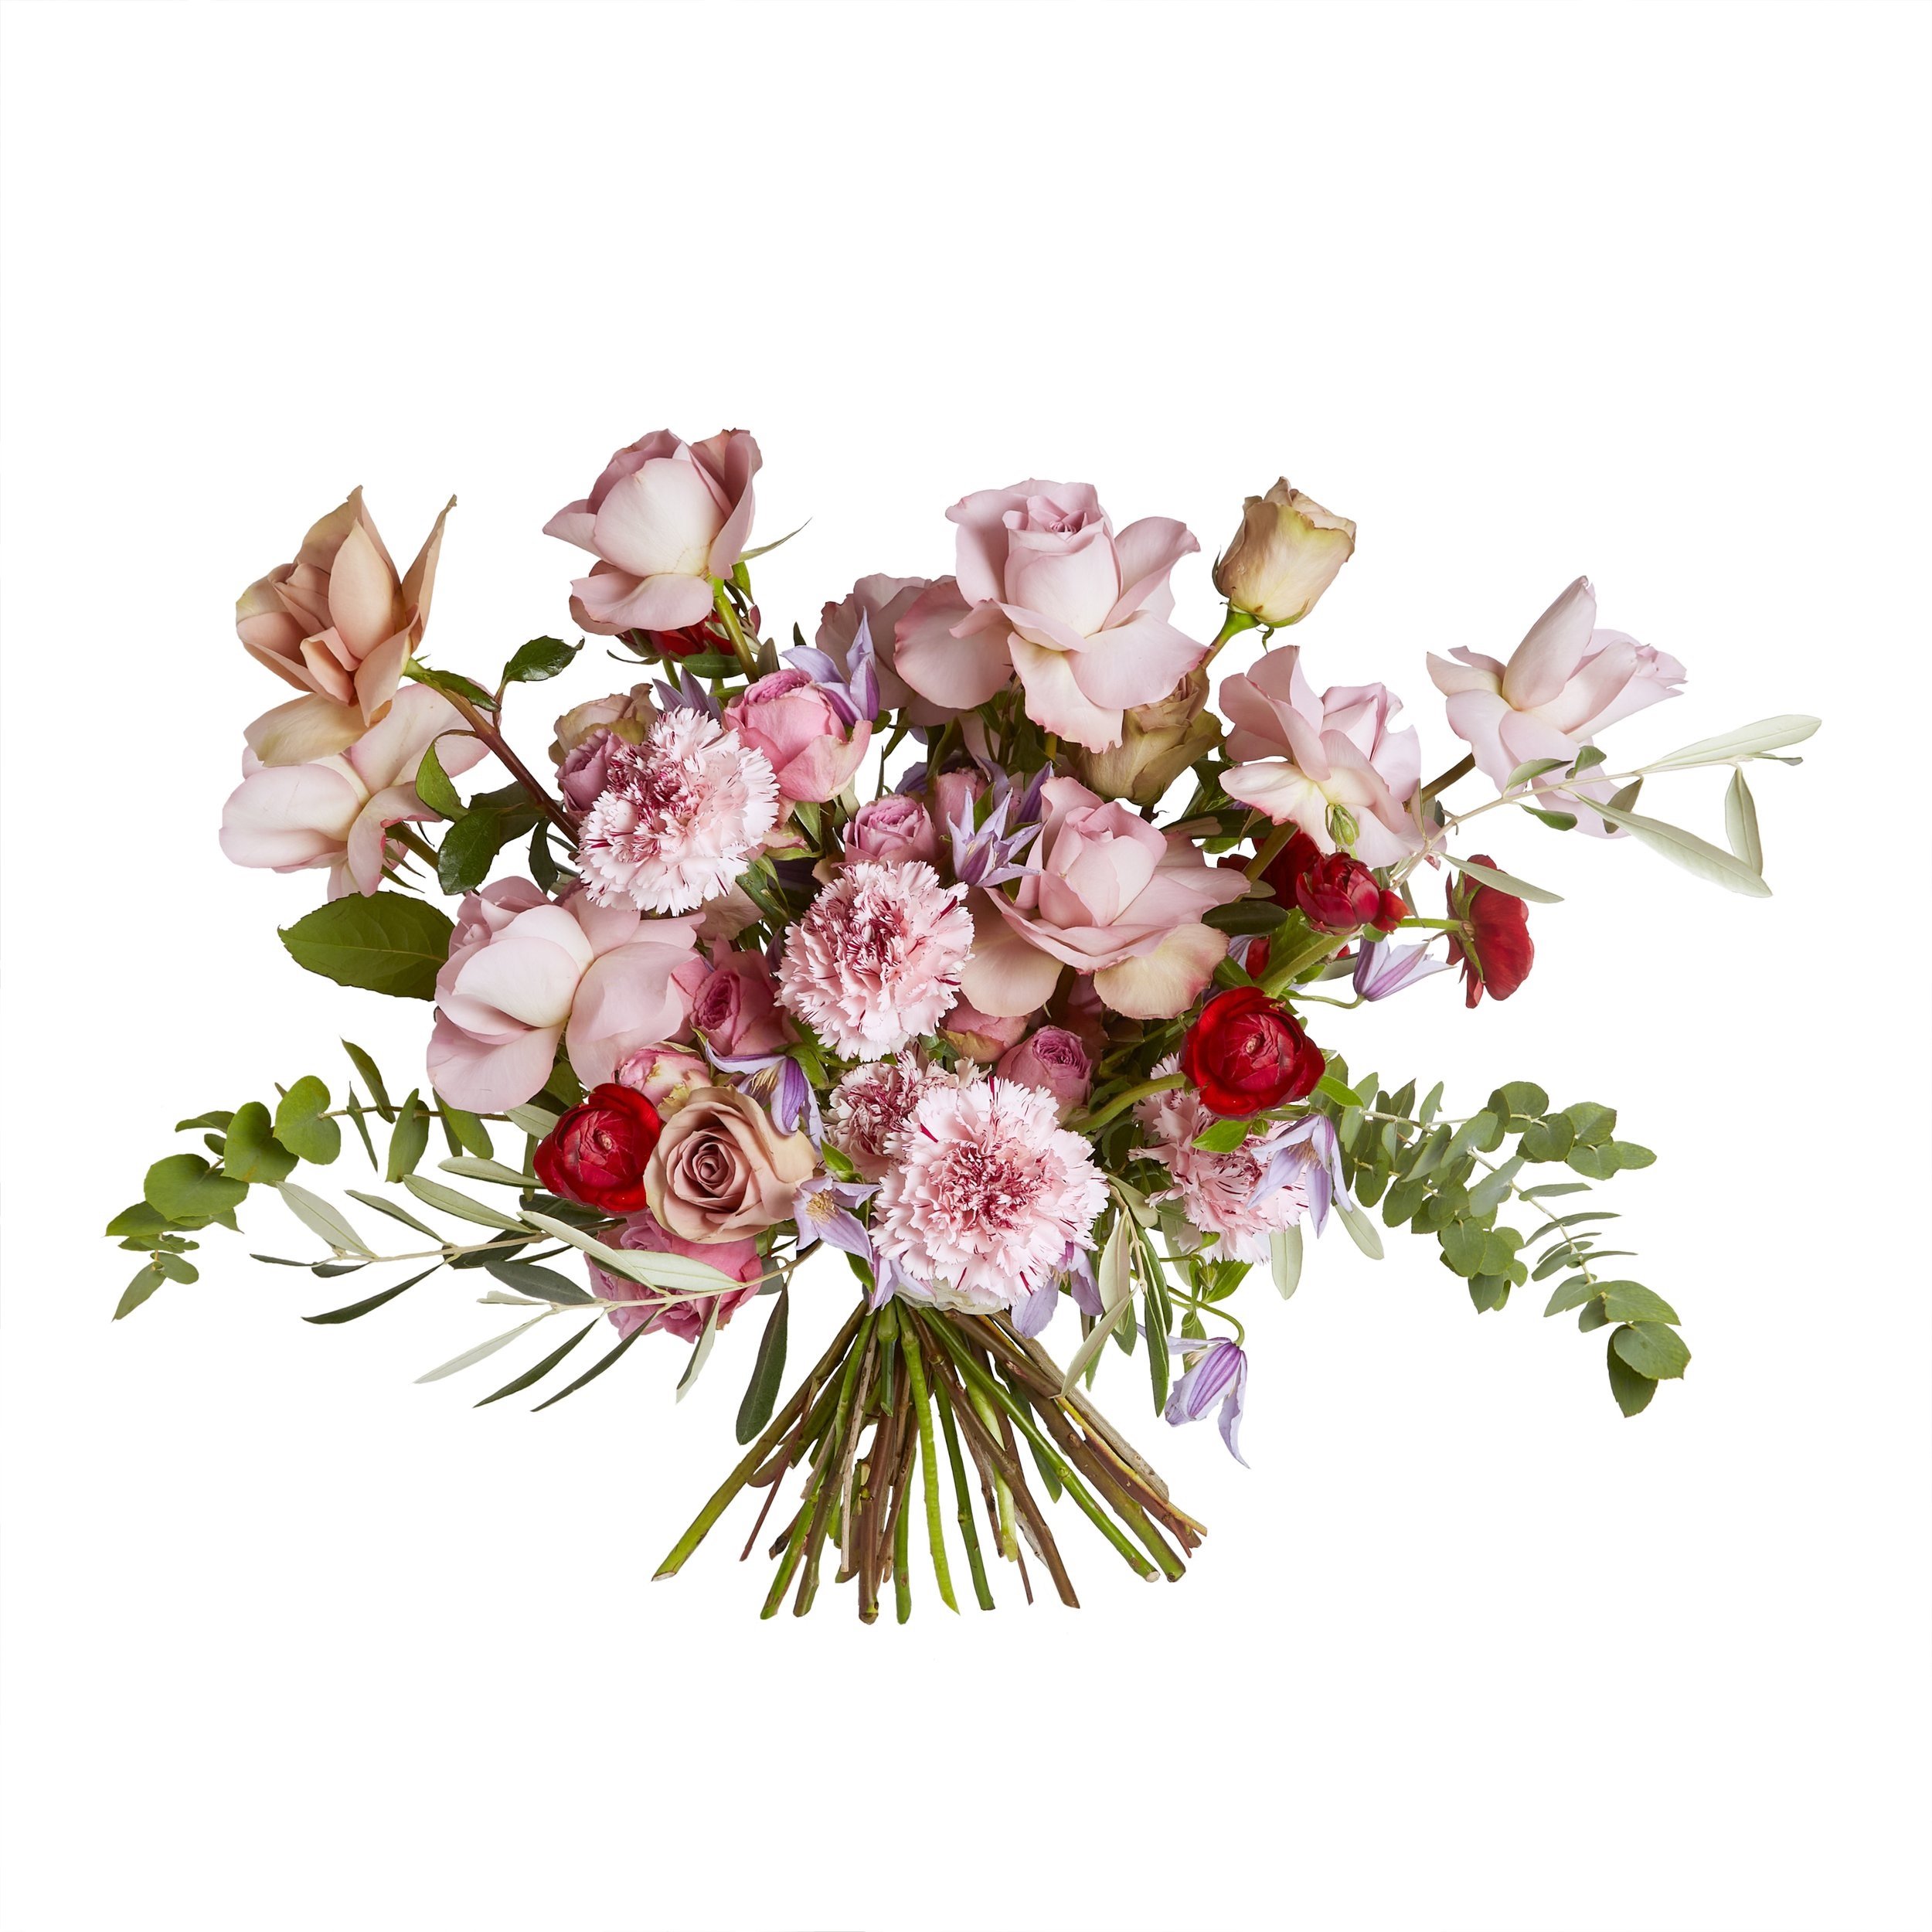 Dear Darling Bouquet